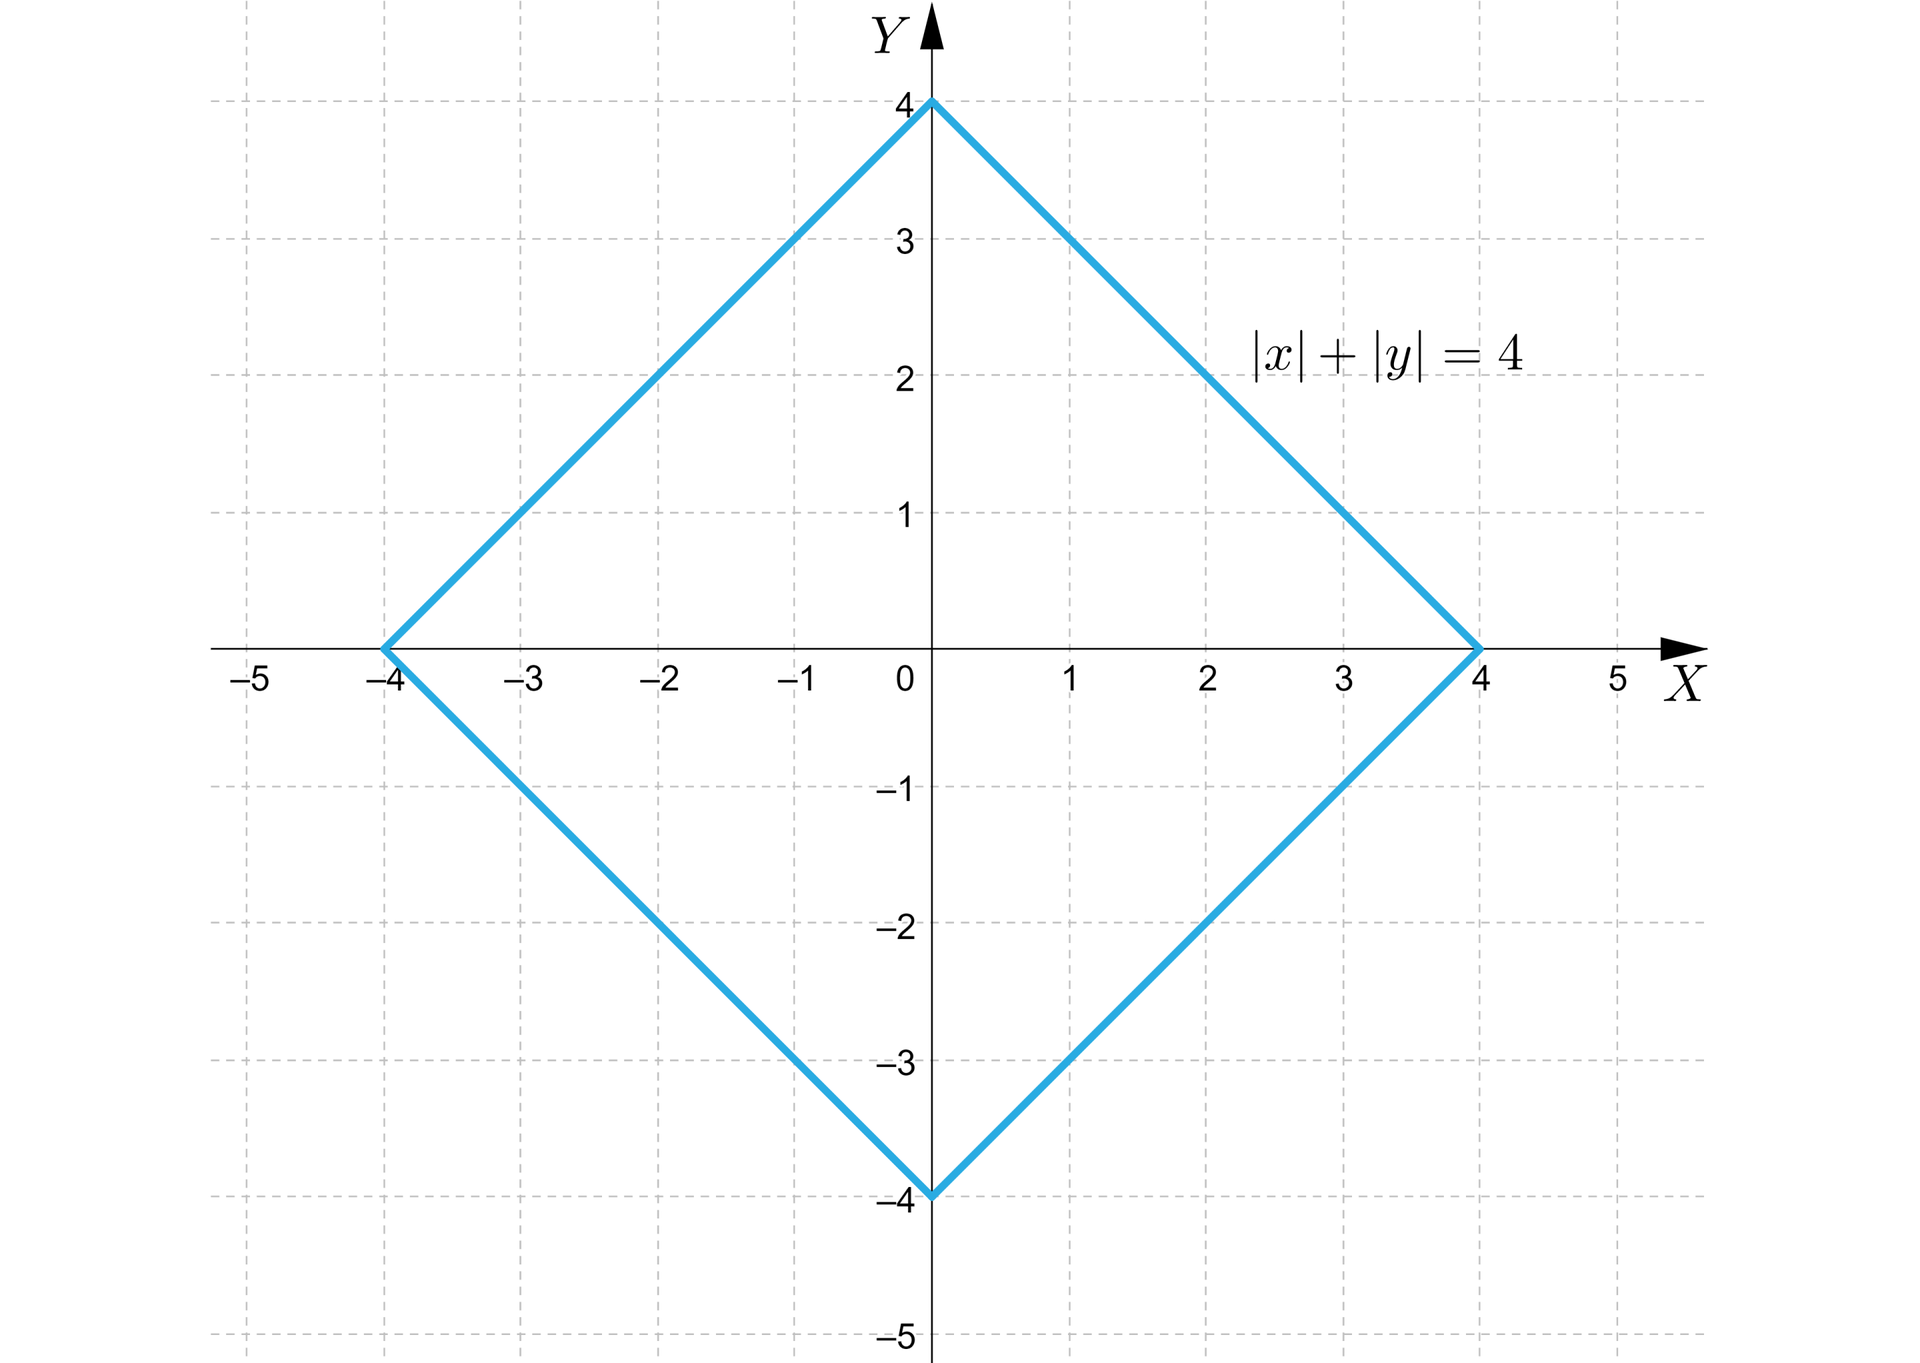 Ilustracja przedstawia układ współrzędnych z poziomą osią X od minus pięciu do pięciu oraz z pionową osią Y od minus czterech do czterech. Na płaszczyźnie narysowano wykres funkcji x+y=4, czyli romb o następujących wierzchołkach: -4;0, 0;4, 0;-4, 4;0.